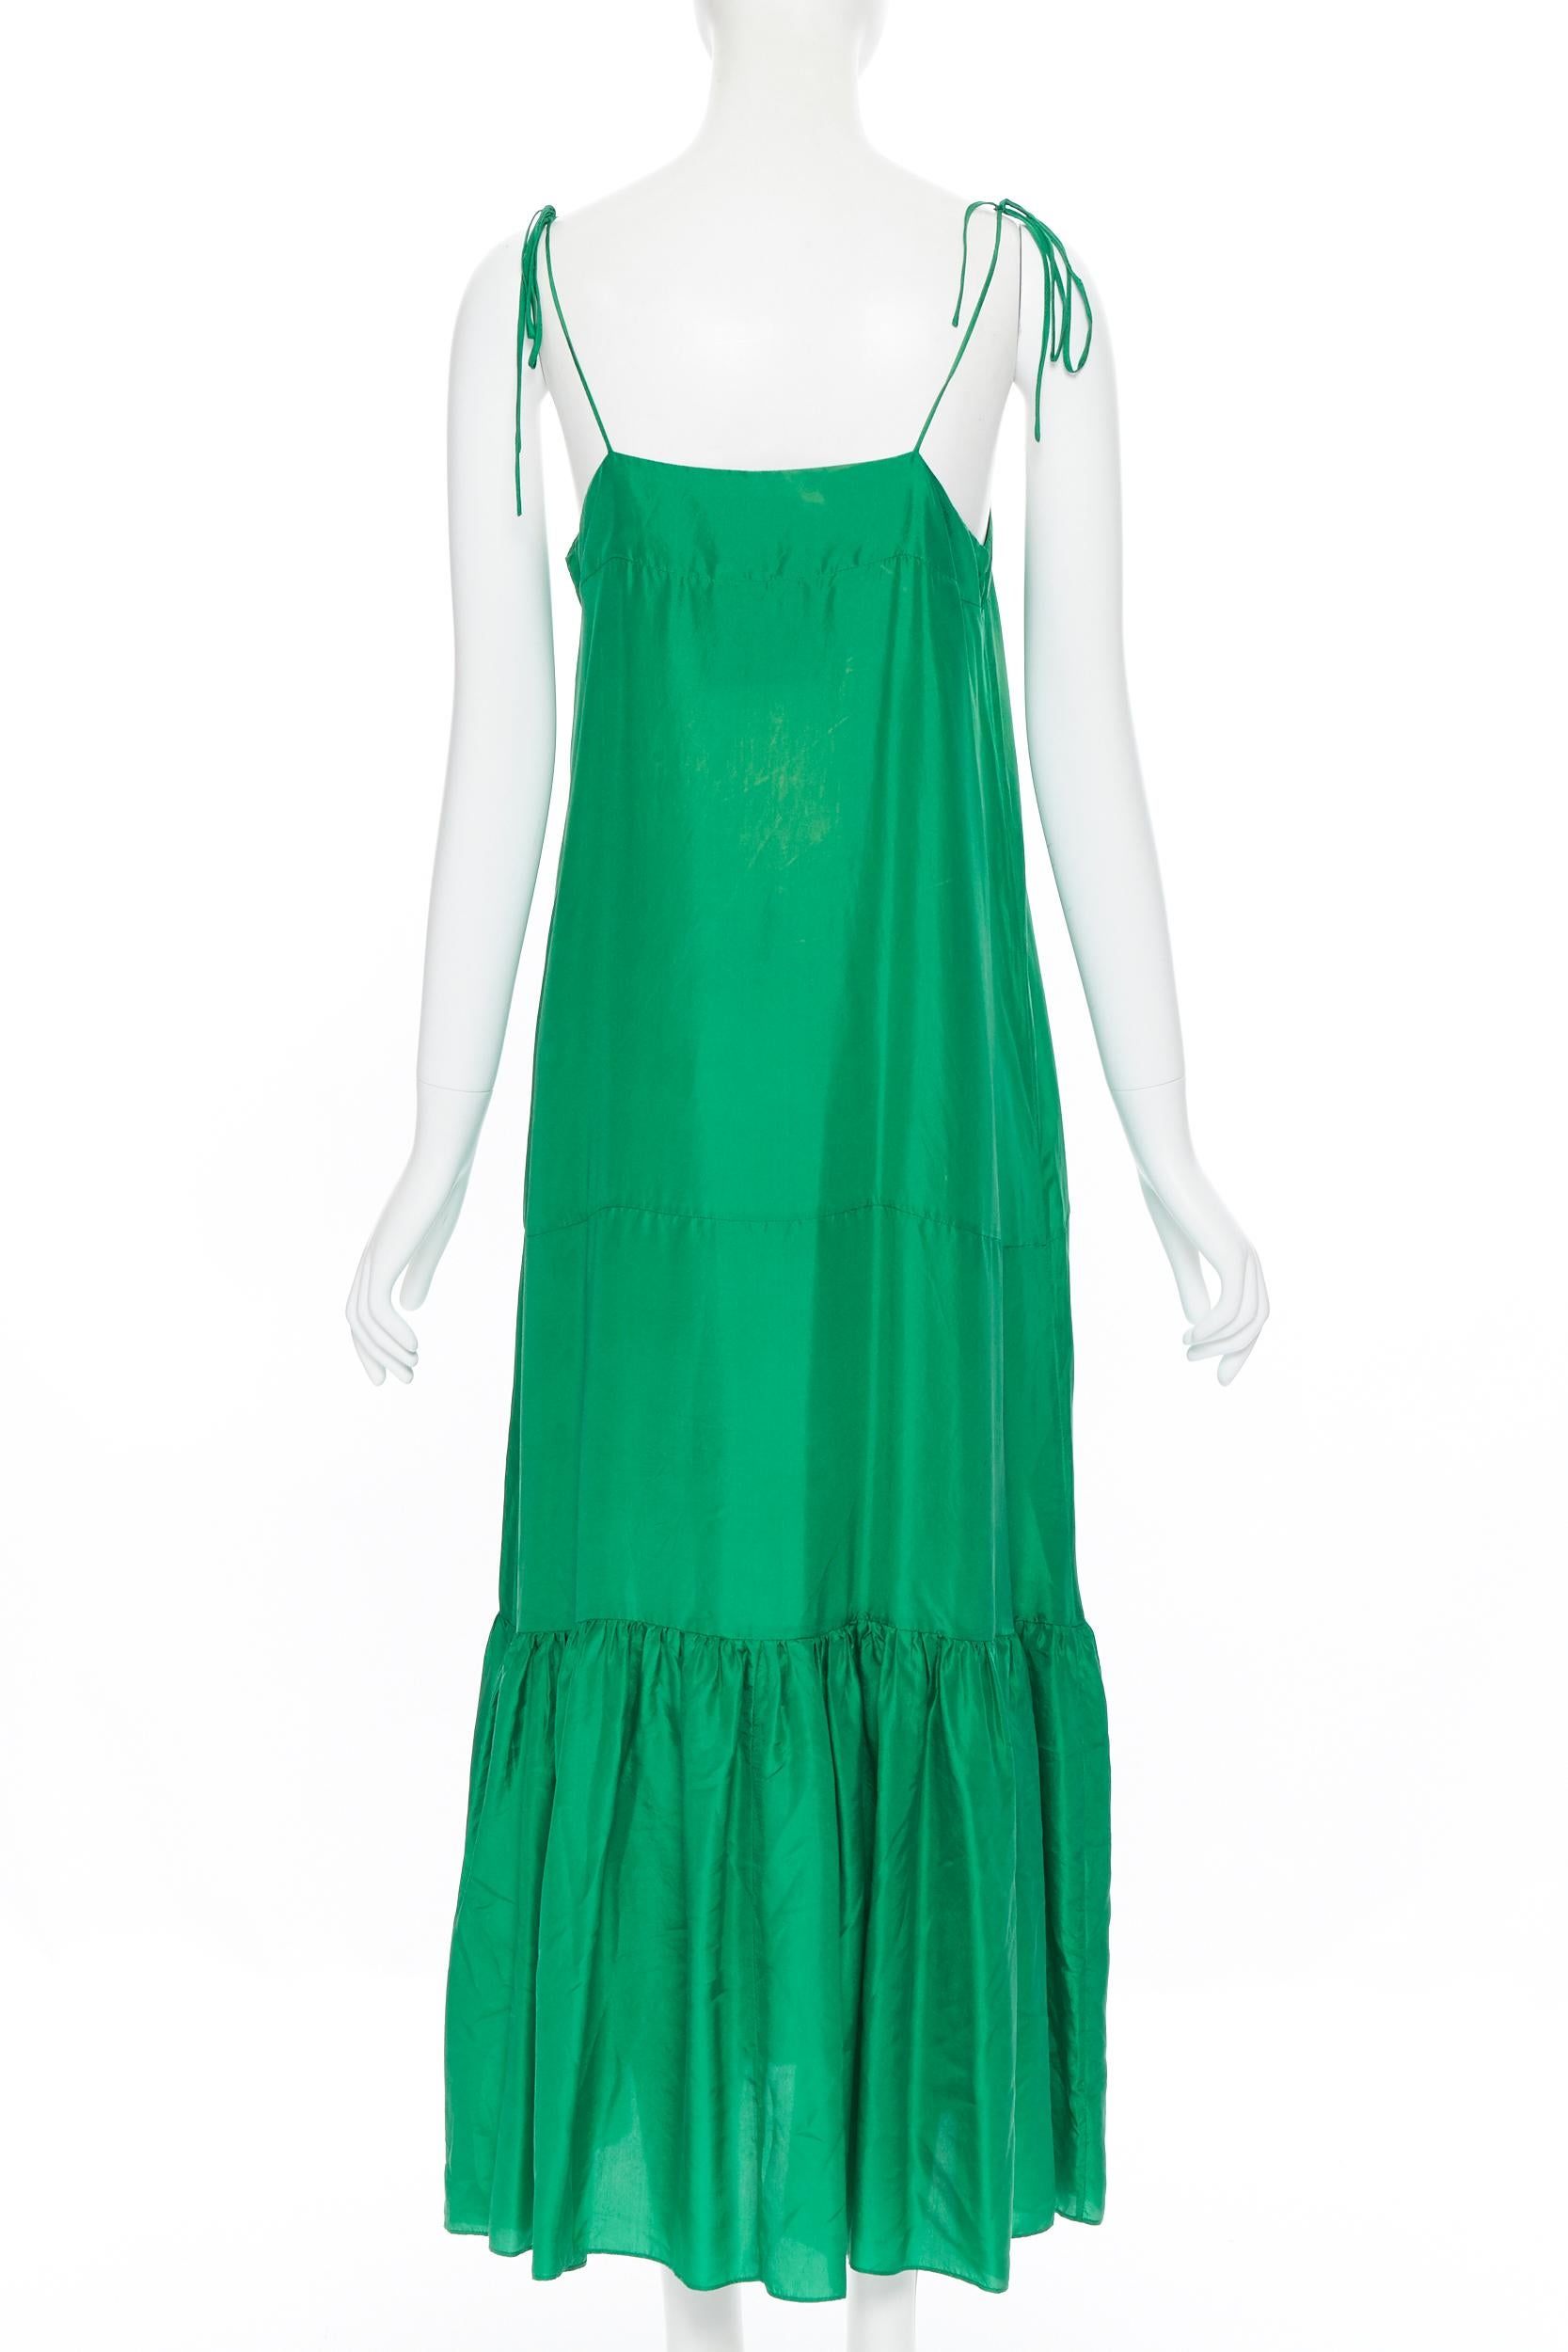 Green KALITA 100% silk kelly green tiered flared hem tie spaghetti strap maxi dress XS